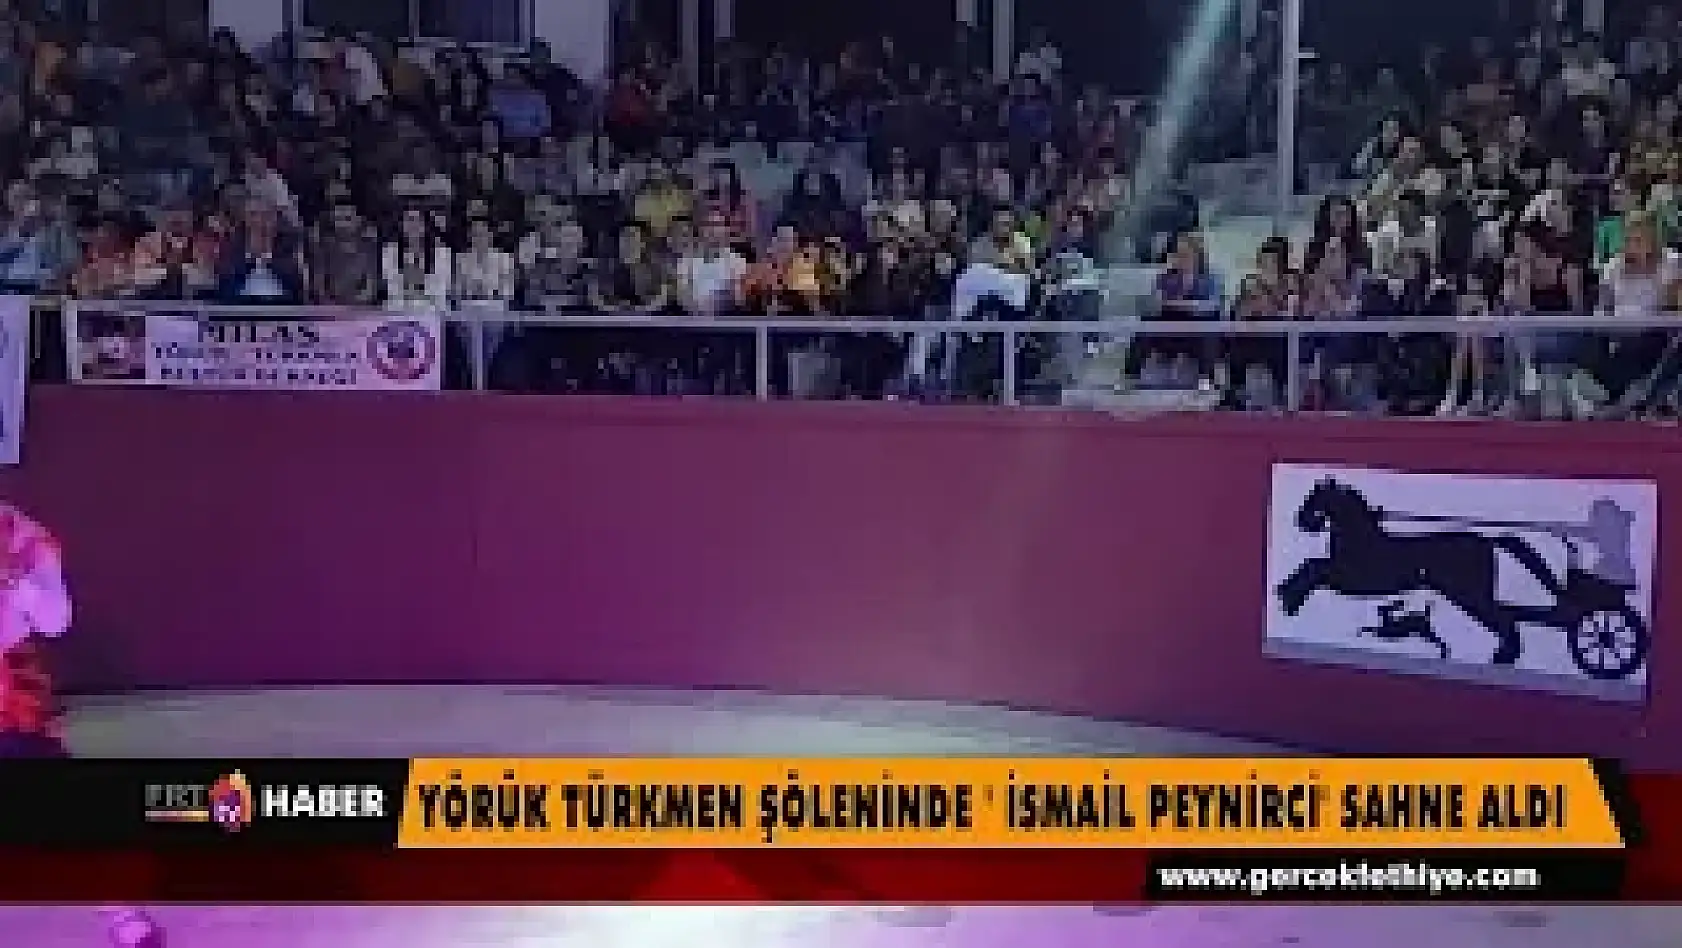 'Yörük Türkmen Şöleninde' İsmail Peynirci sahne aldı